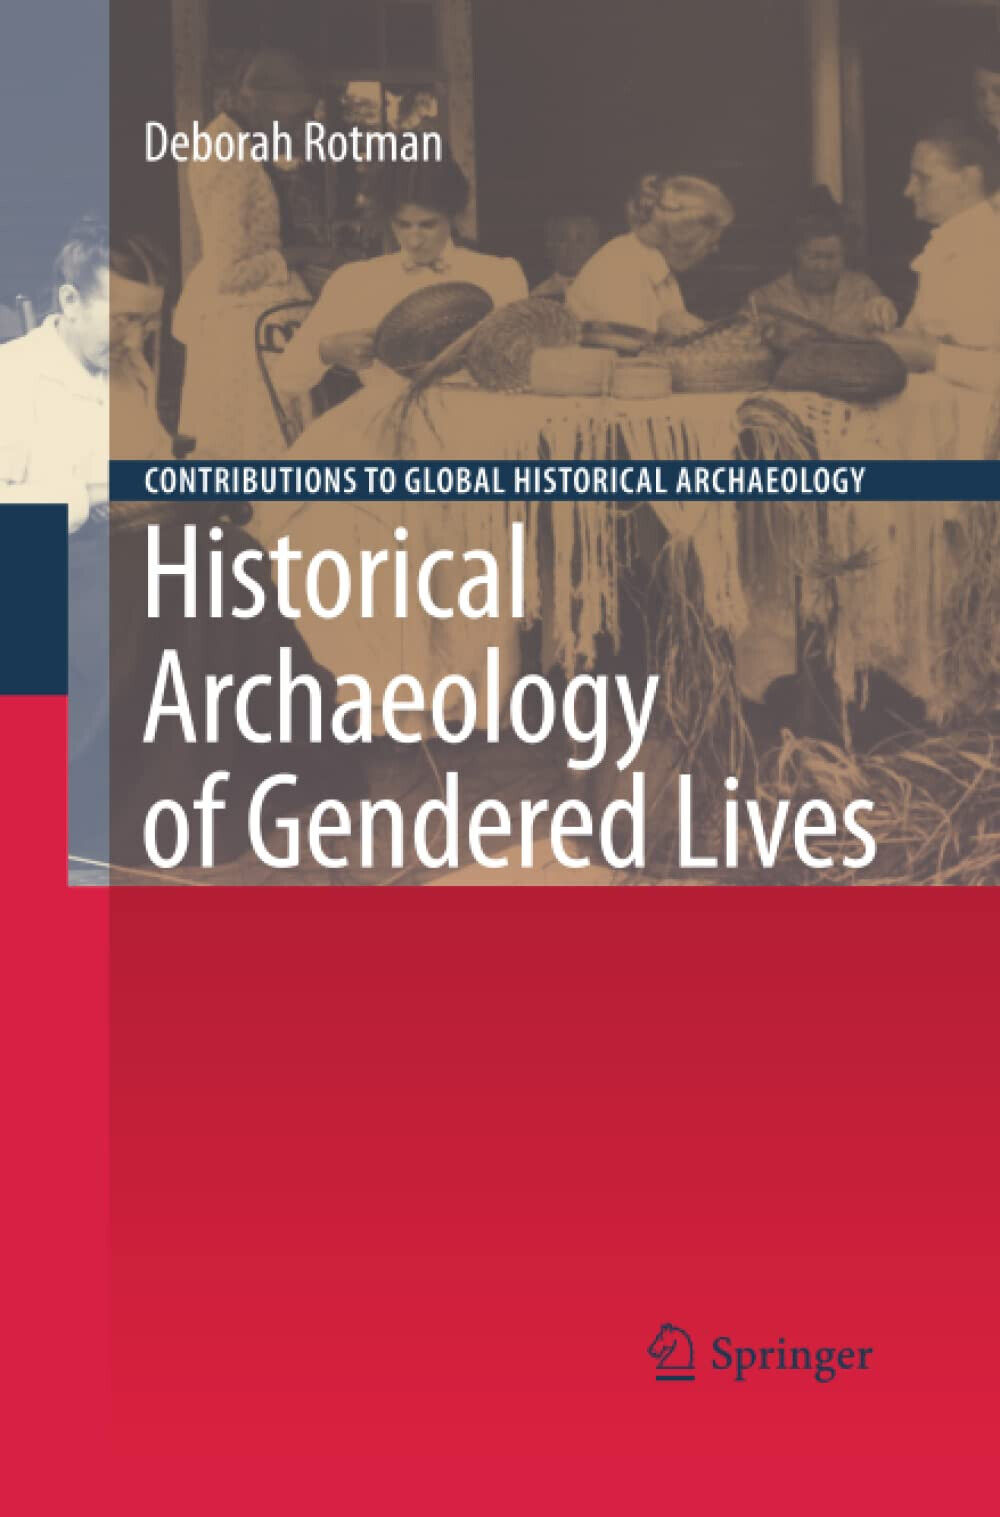 Historical Archaeology of Gendered Lives - Deborah Rotman - Springer, 2012